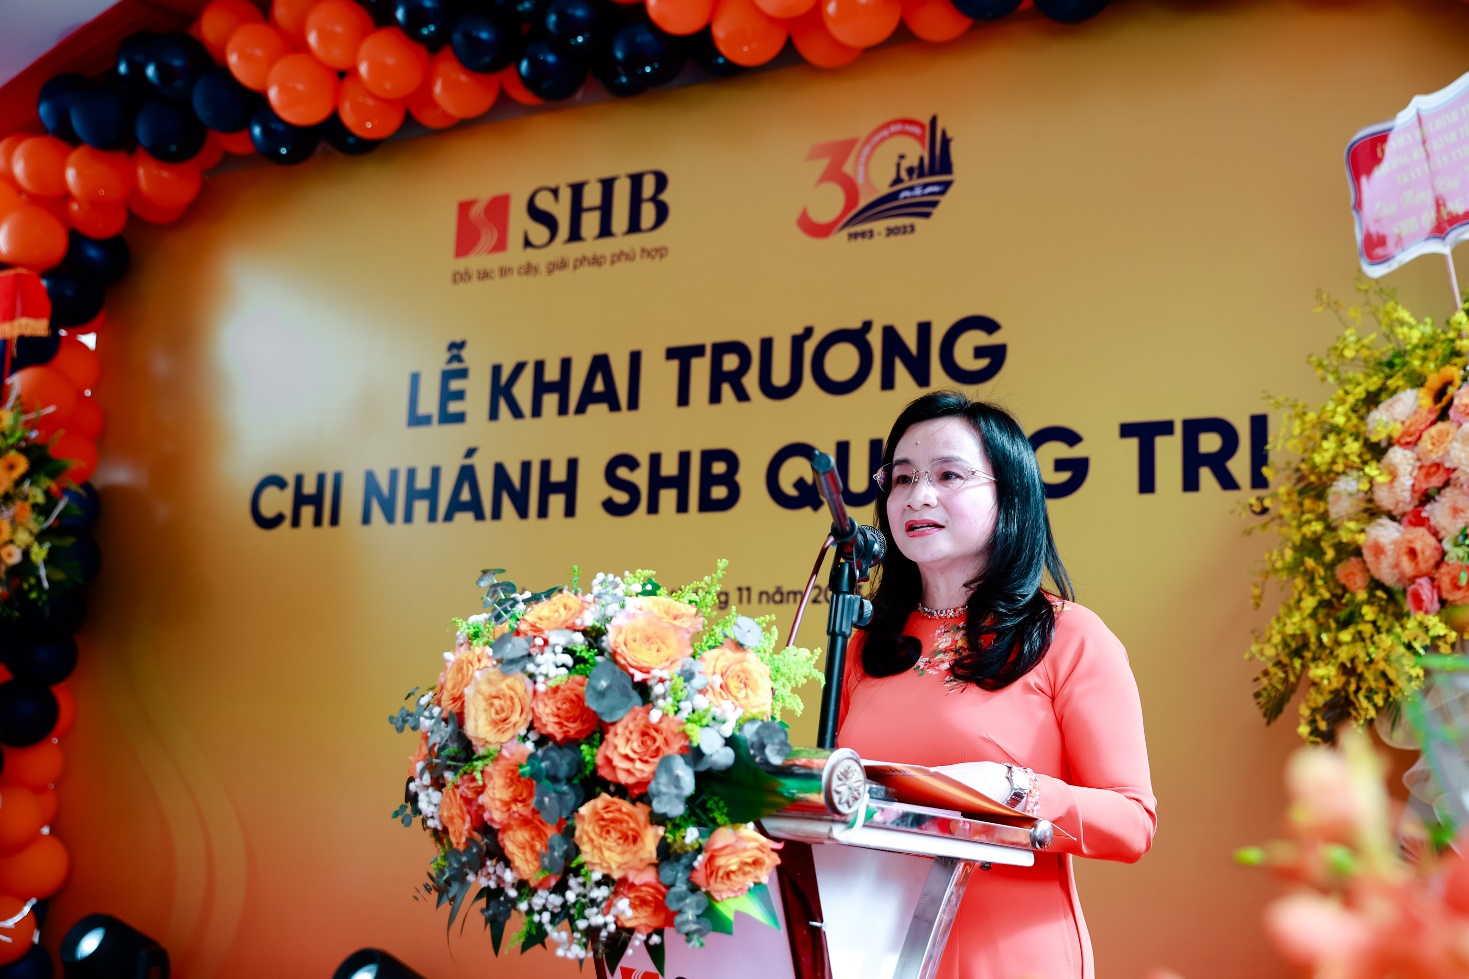 SHB khai trương chi nhánh Quảng Trị, mở rộng mạng lưới vùng Bắc Trung Bộ - Ảnh 1.